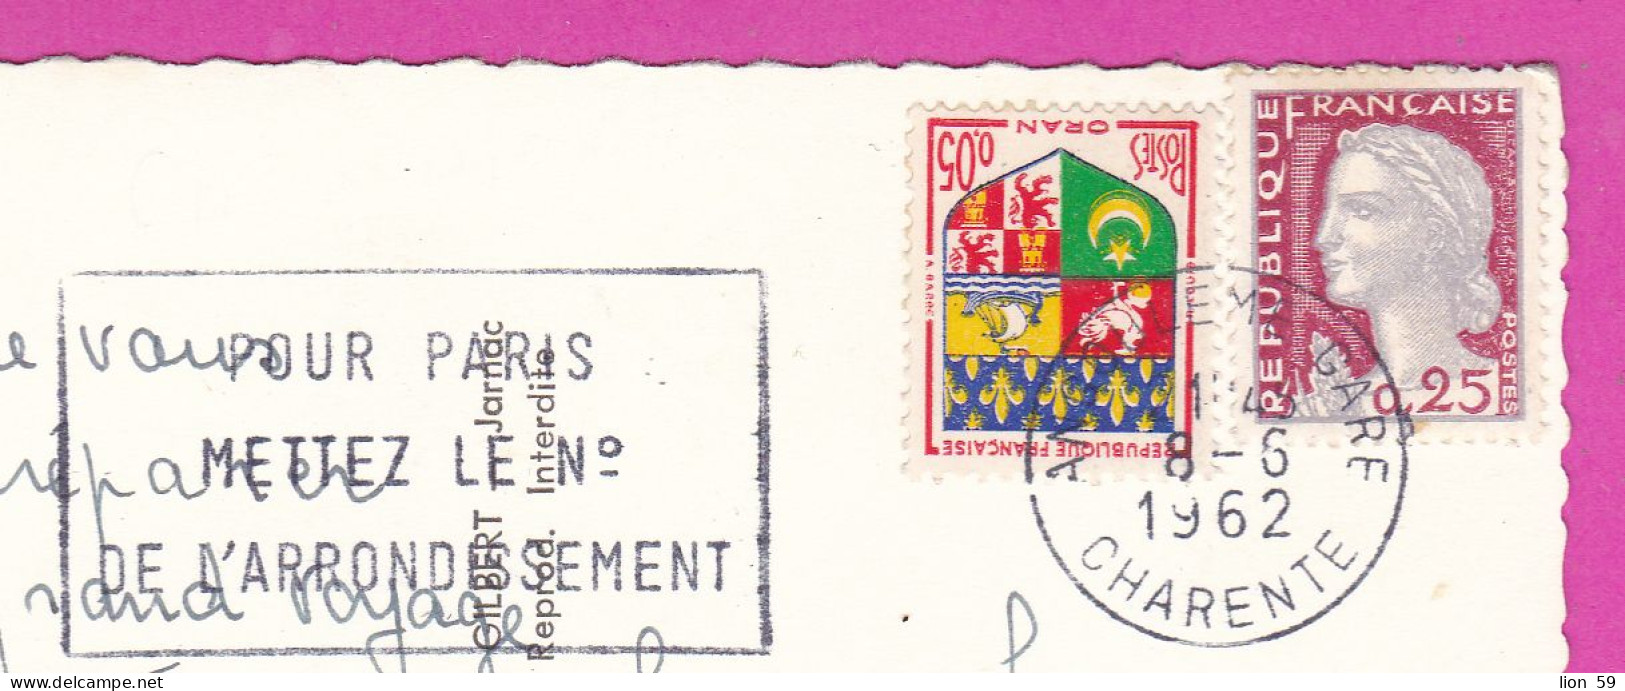 294114 / France - ANGOULEME Les Nouveaux Quartiers De La Gare PC 1962 USED 0.05+25 Fr. Marianne De Decaris Blason D'Oran - Briefe U. Dokumente